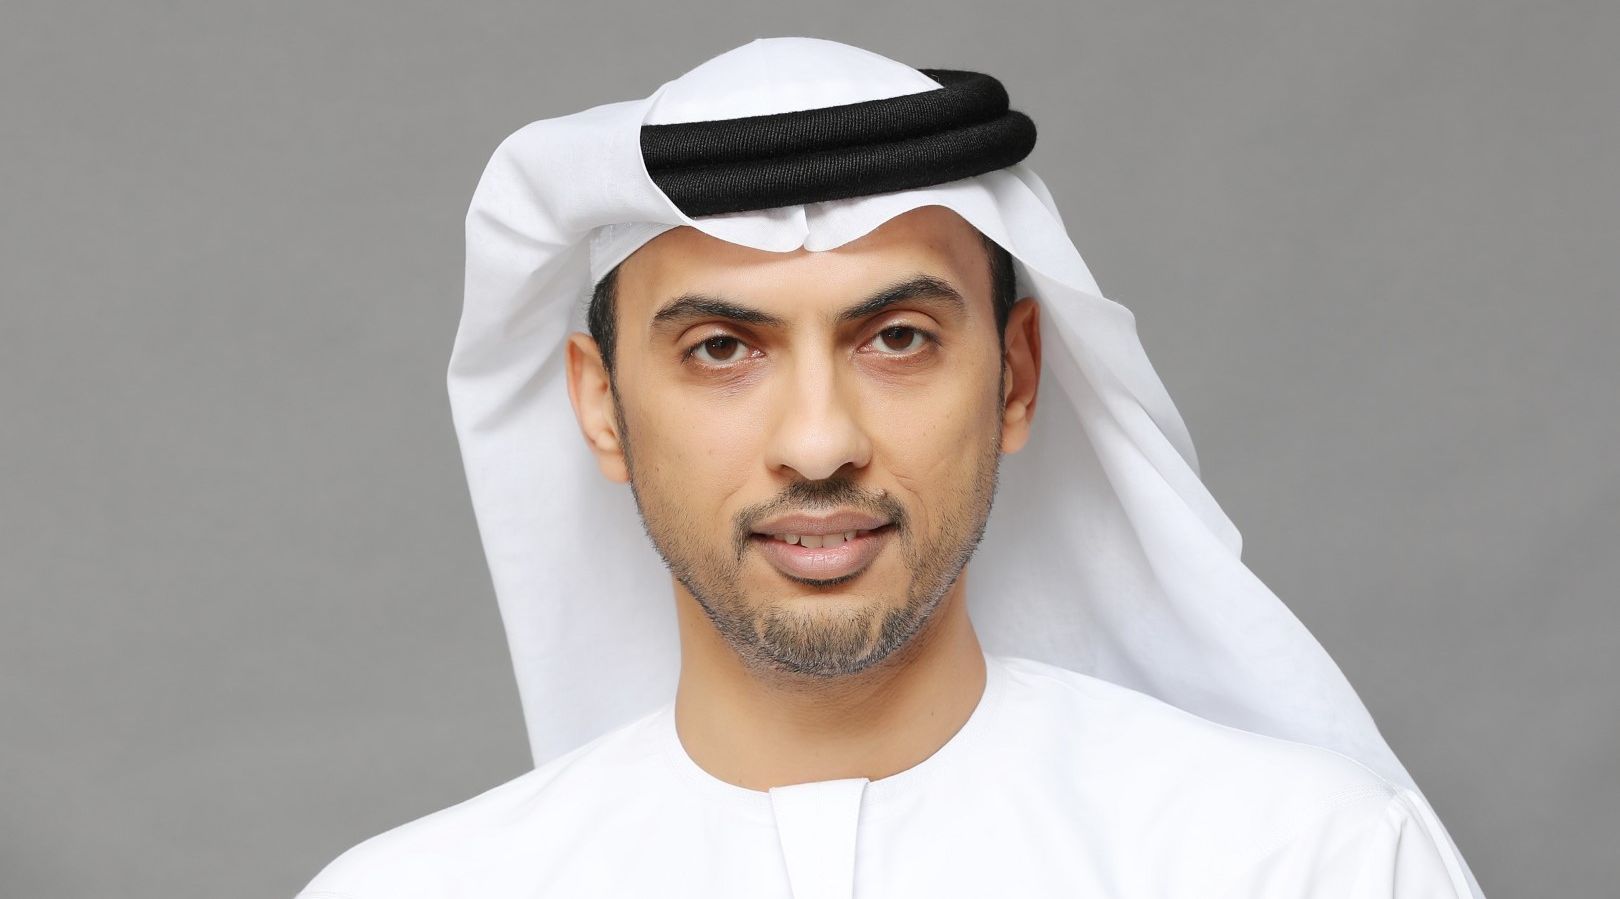 دبي الذكية تحقق إنجازات لافتة خلال الجائحة بفضل منظومة الخدمات والبرامج الرقمية التي تعتمدها